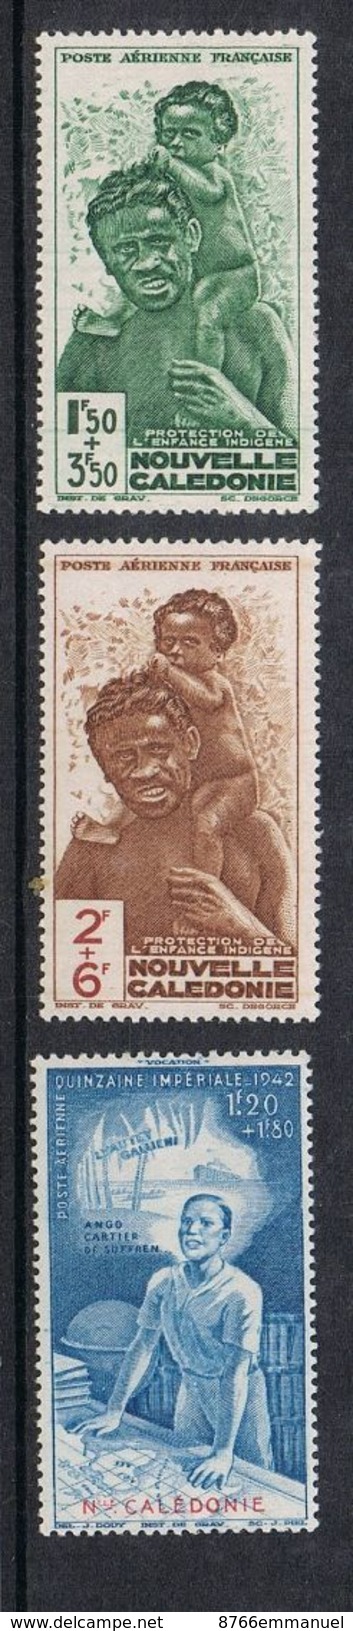 NOUVELLE-CALEDONIE AERIEN N°36 A 38 N** - Unused Stamps